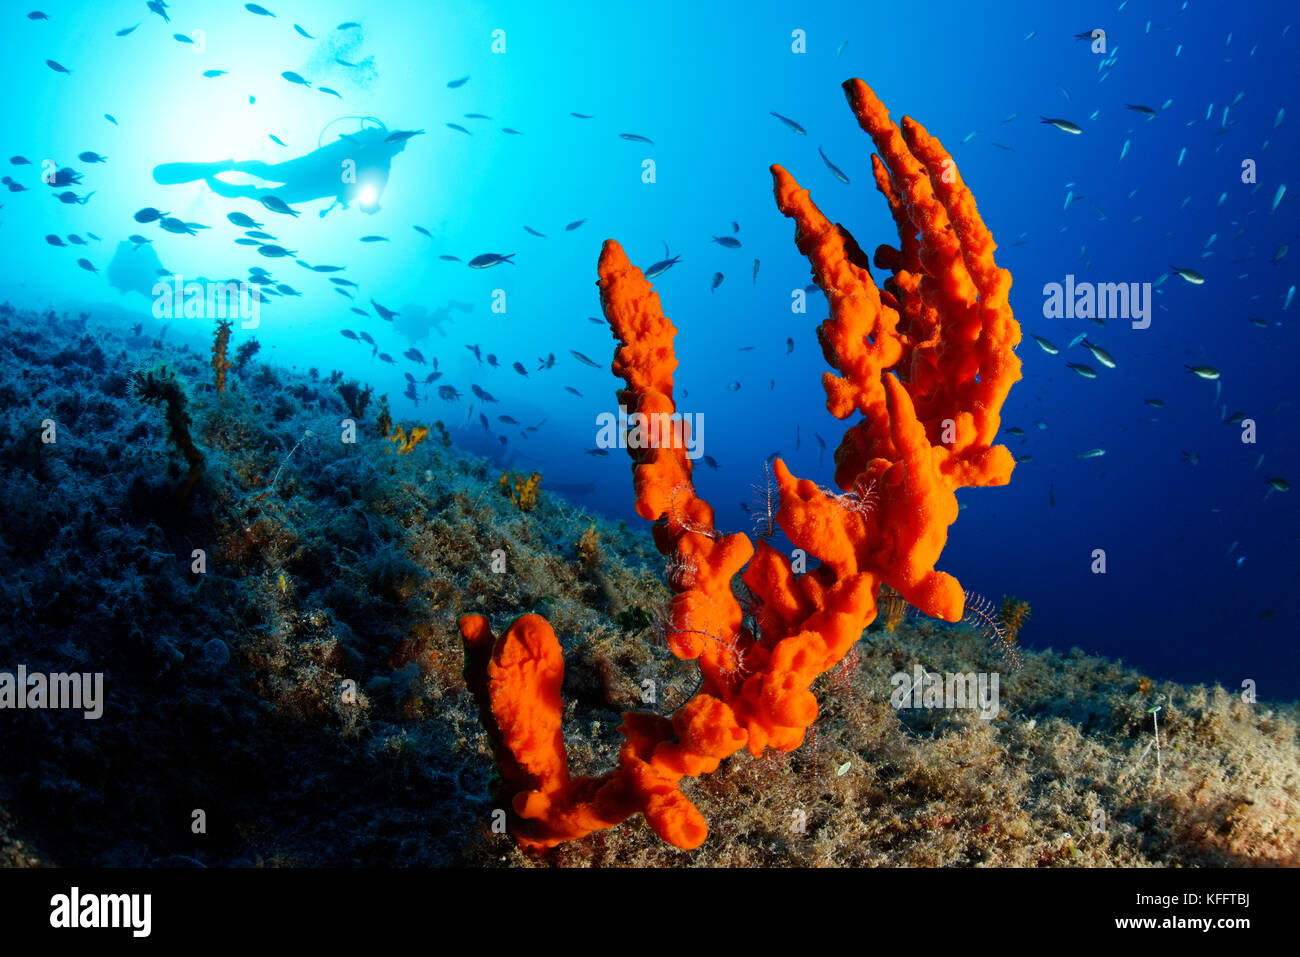 Orange Antler sponge, Axinella verrucosa and scuba diver, Adriatic Sea, Mediterranean Sea, Kornati Islands, Dalmatia, Croatia Stock Photo